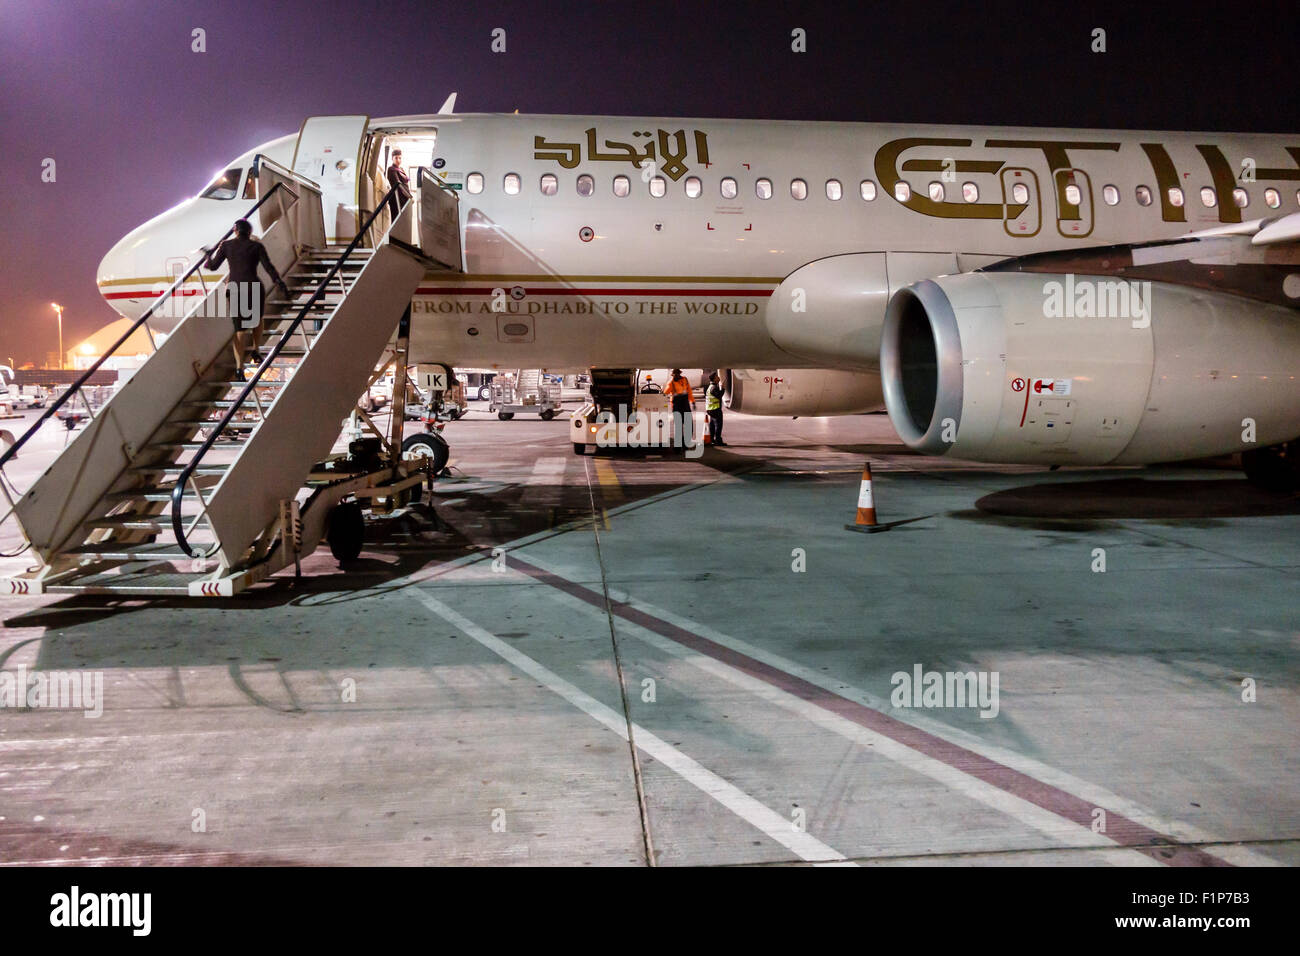 Abu Dhabi Vereinigte Arabische Emirate VAE, Internationaler Flughafen, AUH, Asphalt, Etihad Airways, Verkehrsflugzeug Flugzeug Flugzeug Flugzeug Flugzeug, Flugzeug, pla Stockfoto